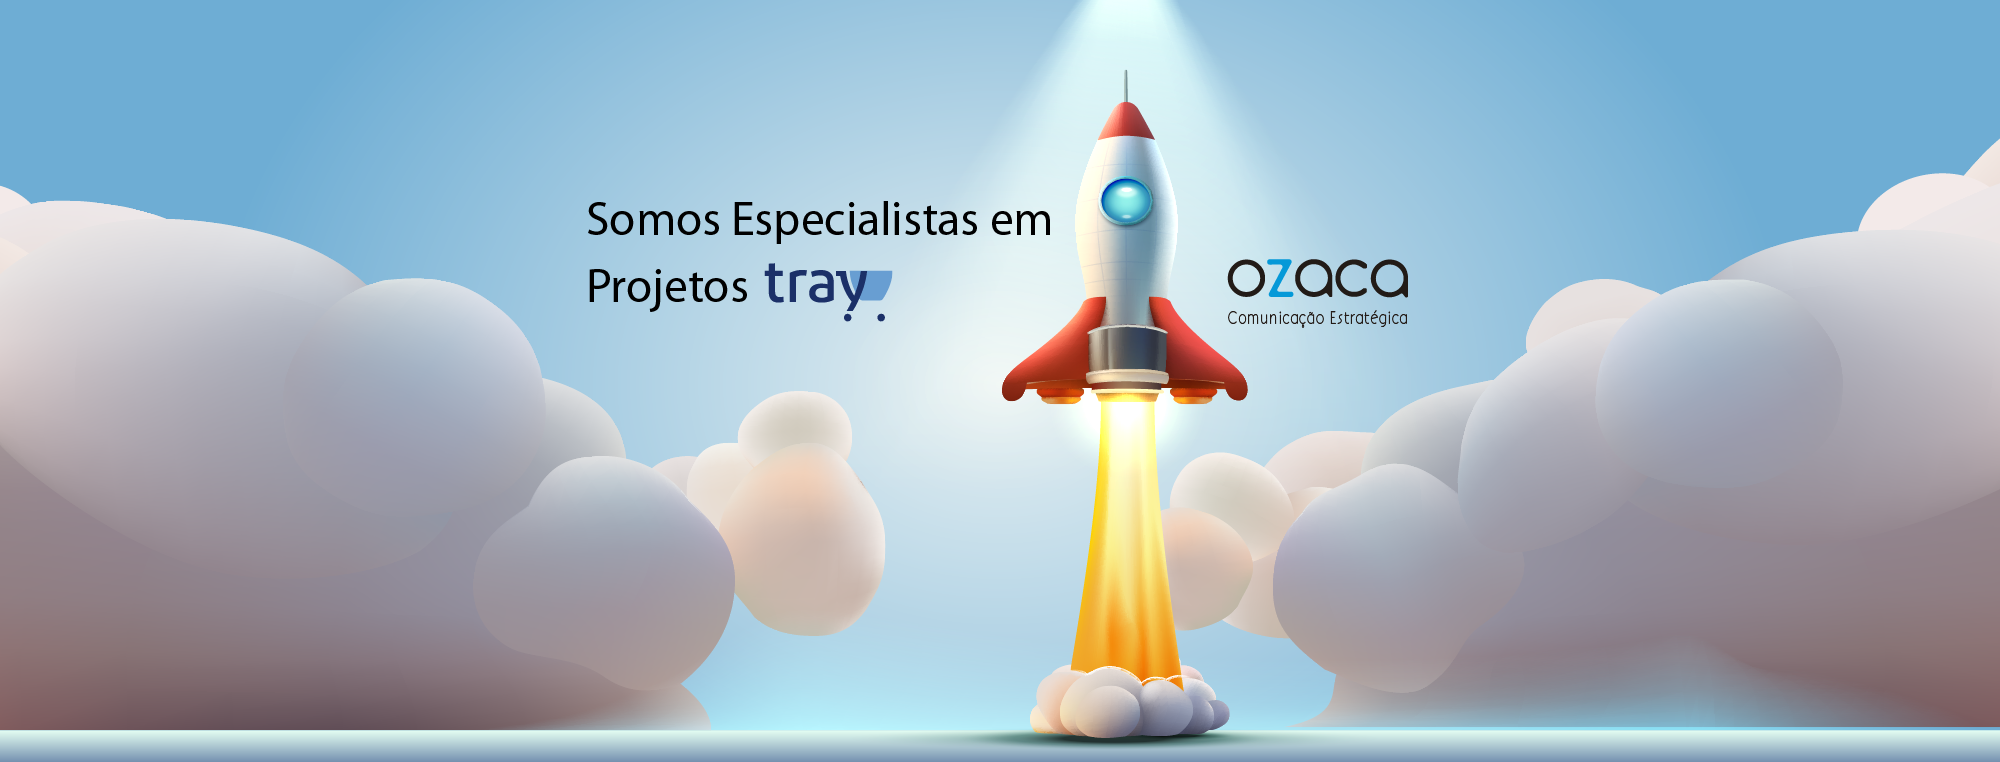 (c) Ozacacomunicacao.com.br